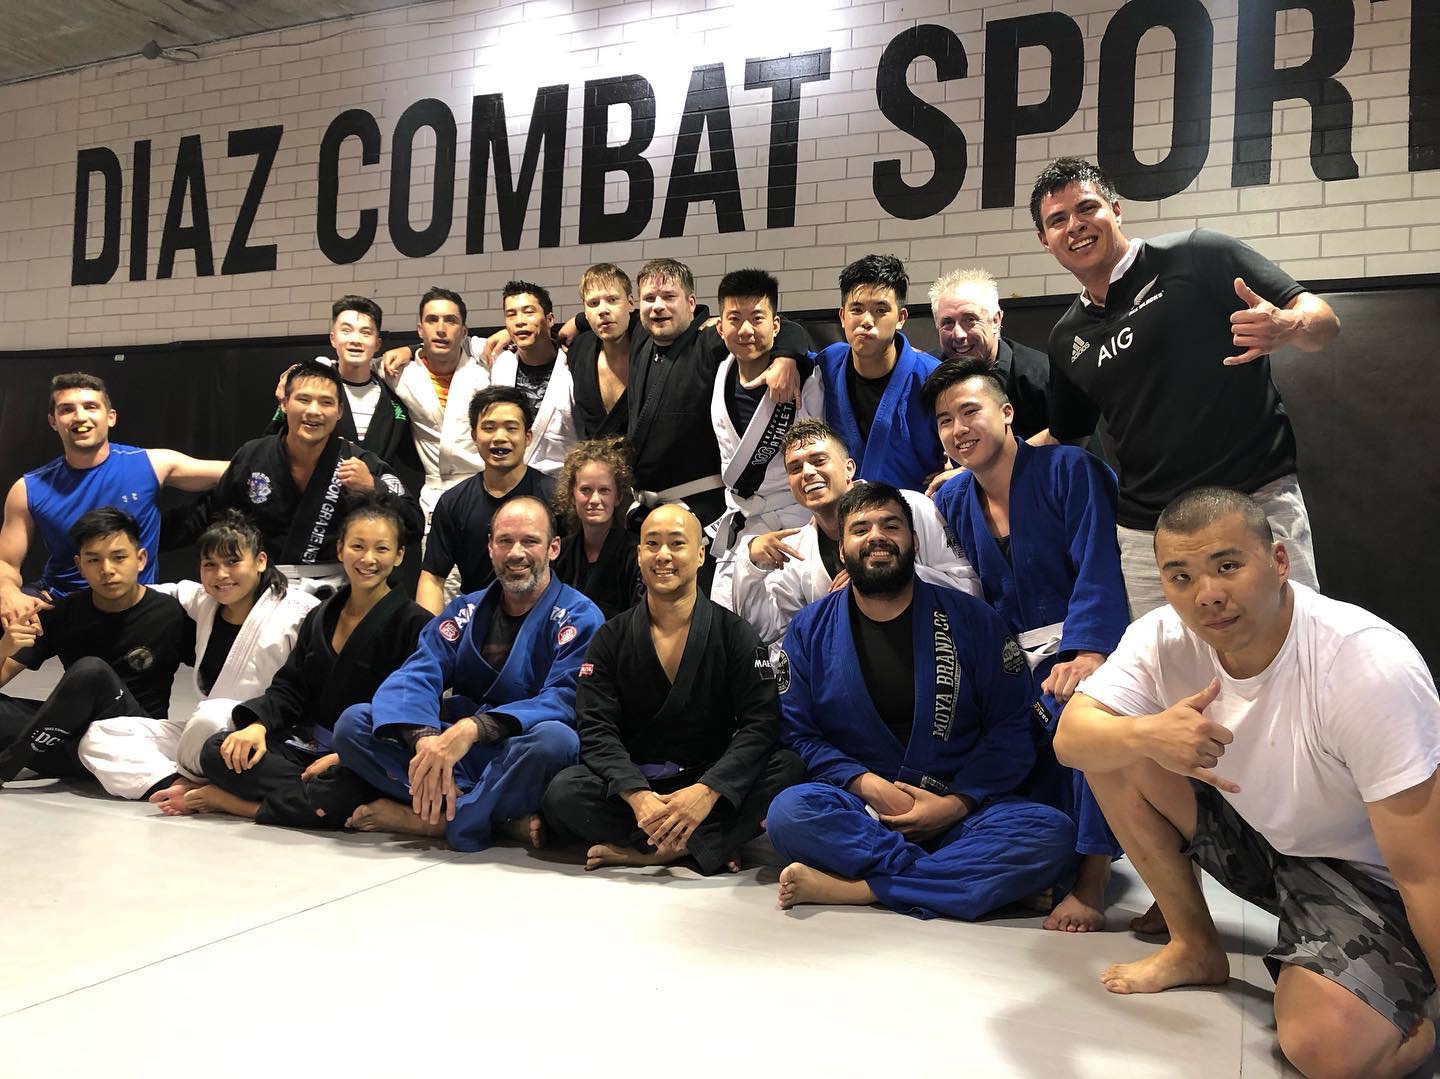 Brazilian Jiu-Jitsu Class At Diaz Combat Sports